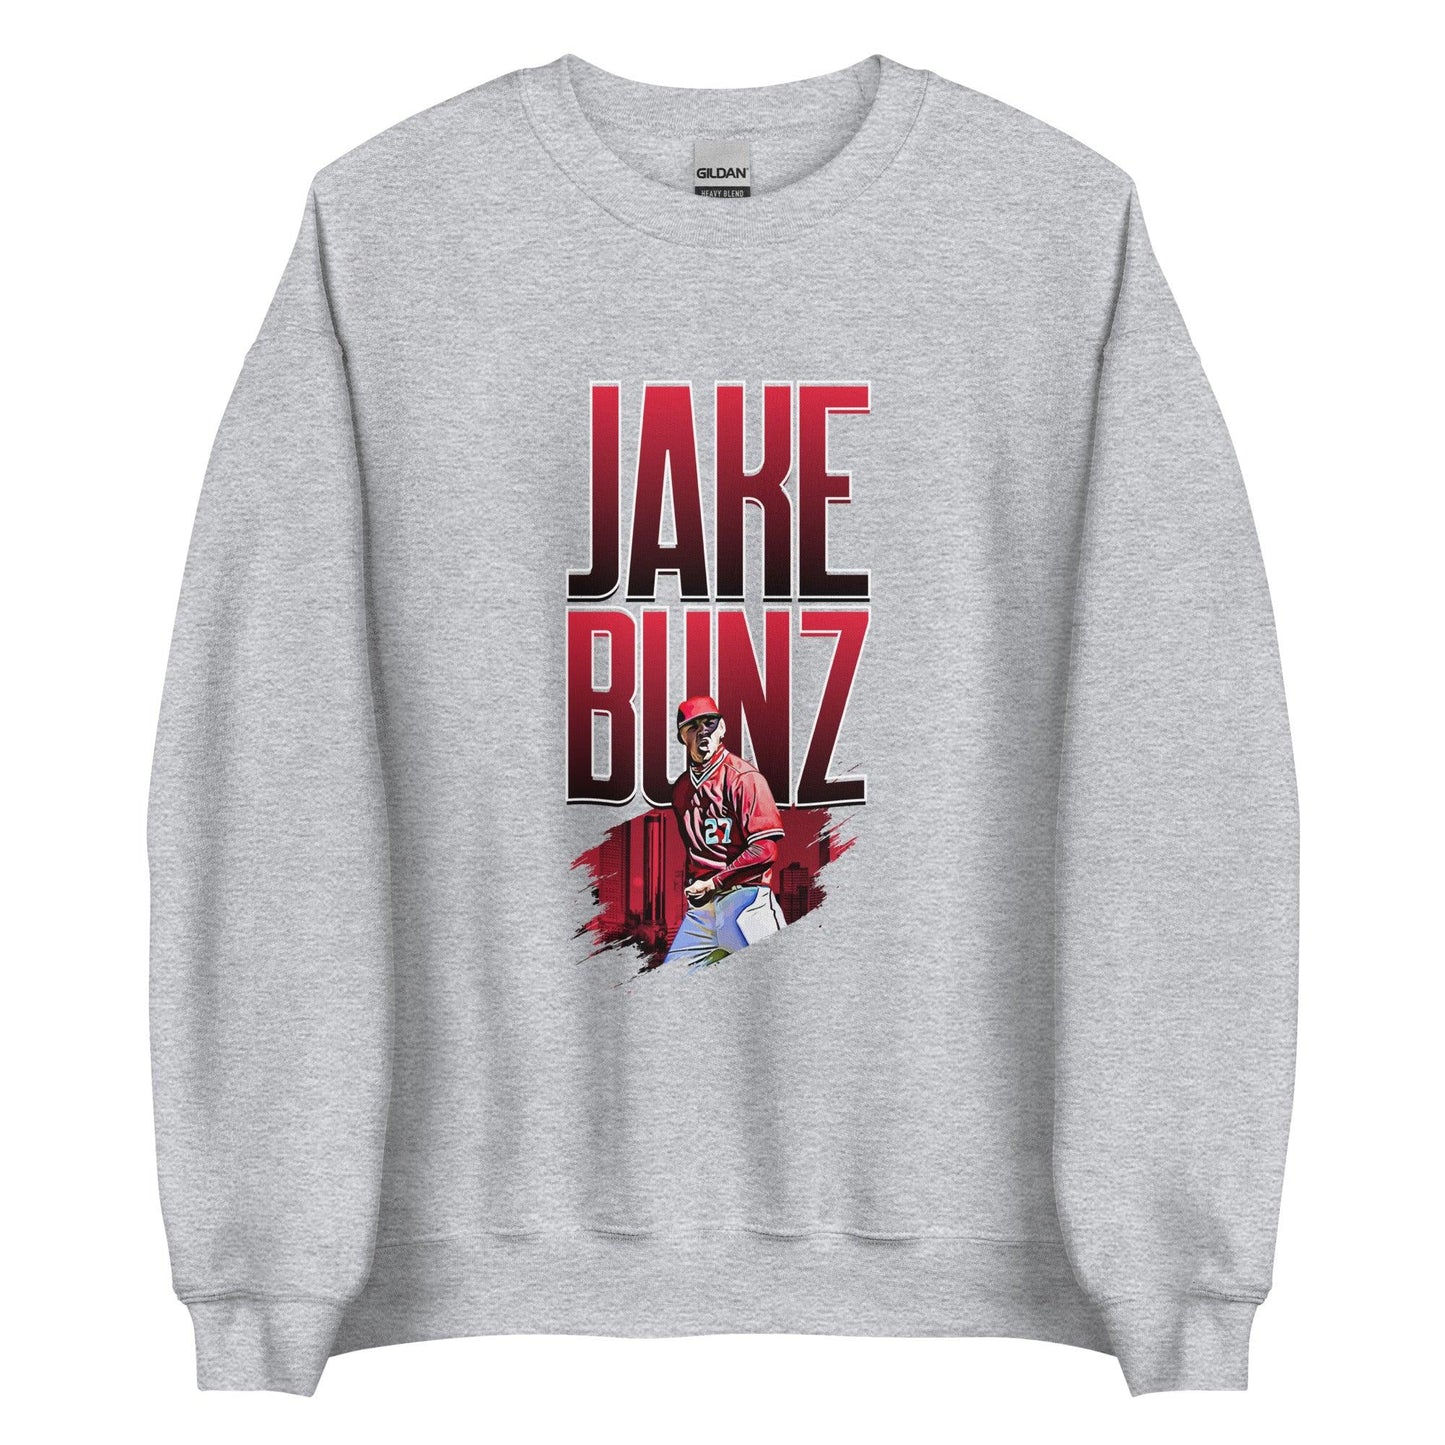 Jake Bunz "Celebrate" Sweatshirt - Fan Arch